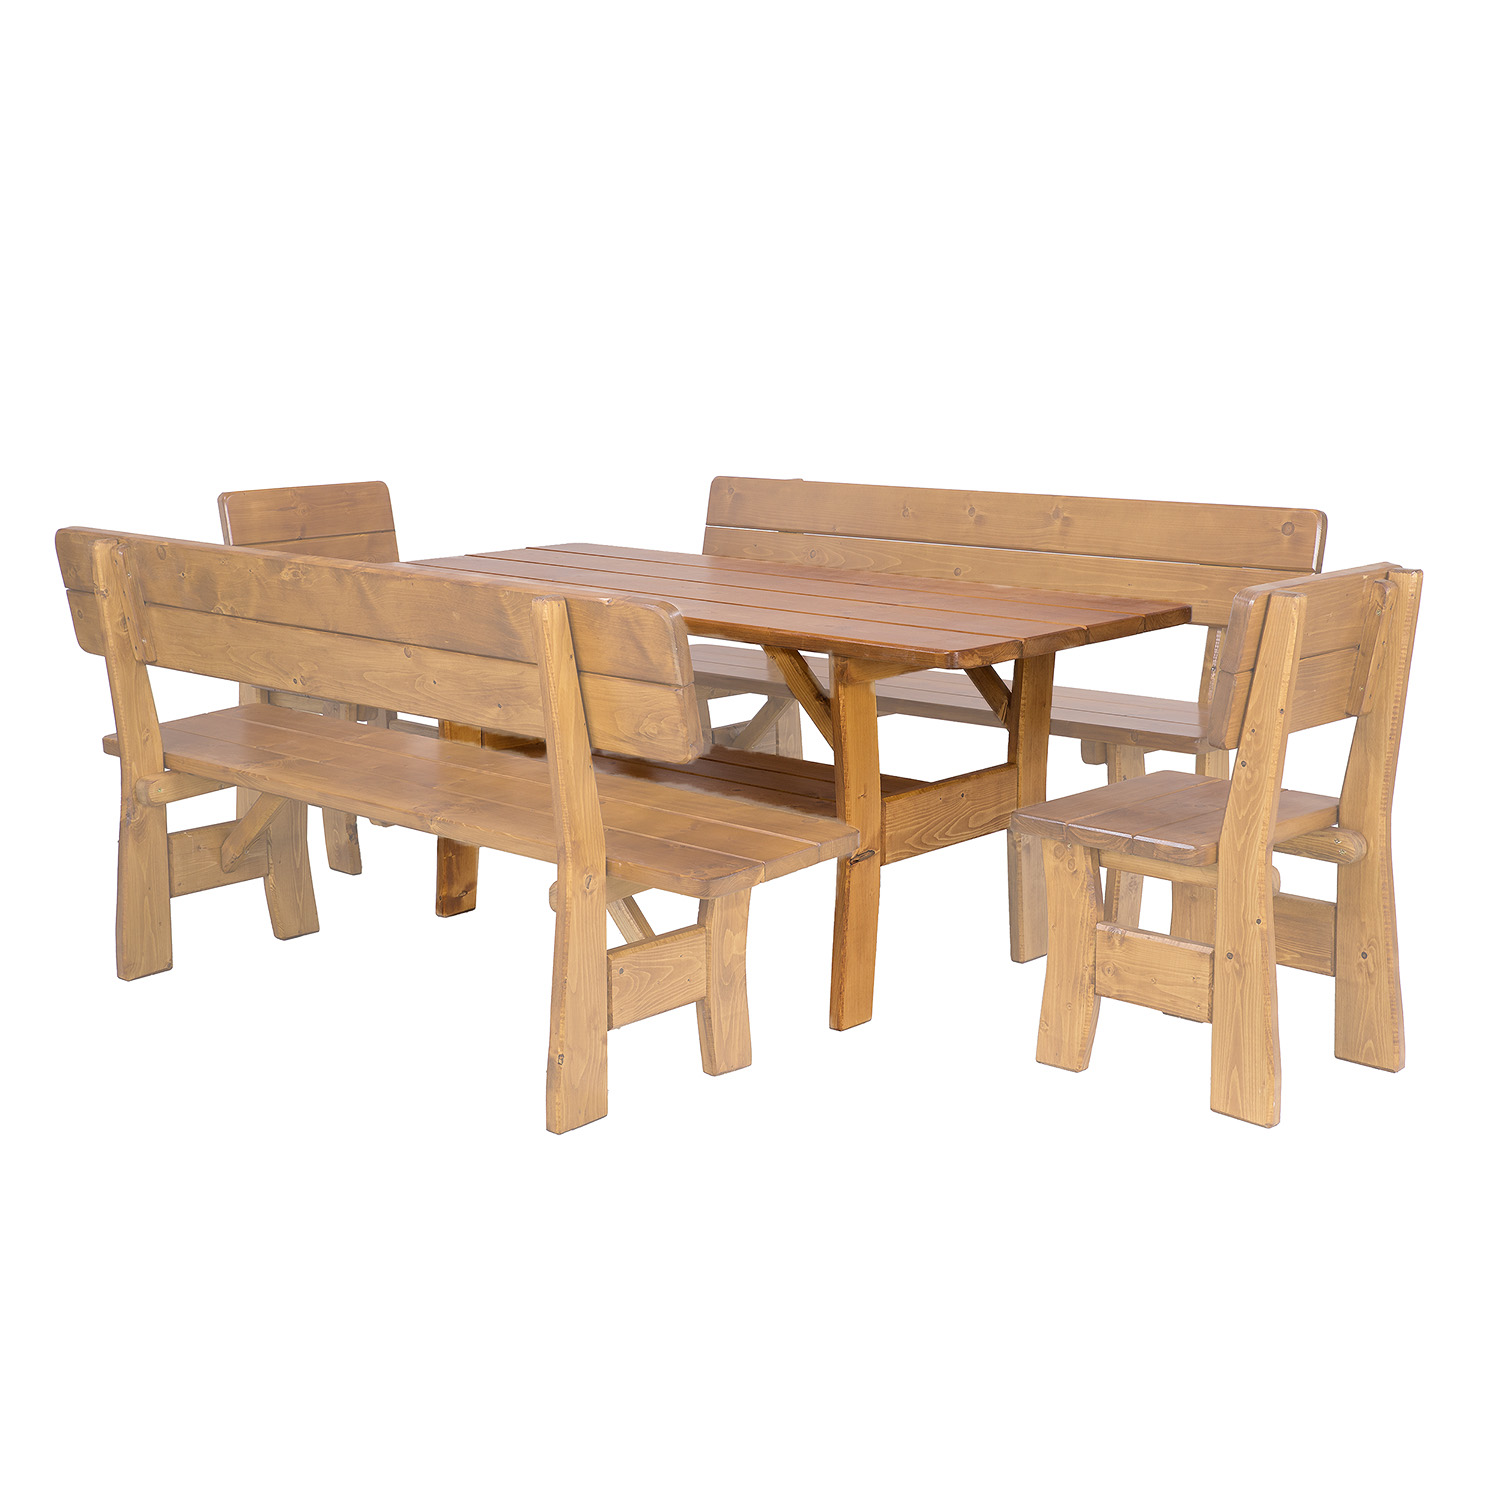 HUGO - zahradní stůl ze smrkového dřeva, lakovaný 180x81x80cm - Týk lak